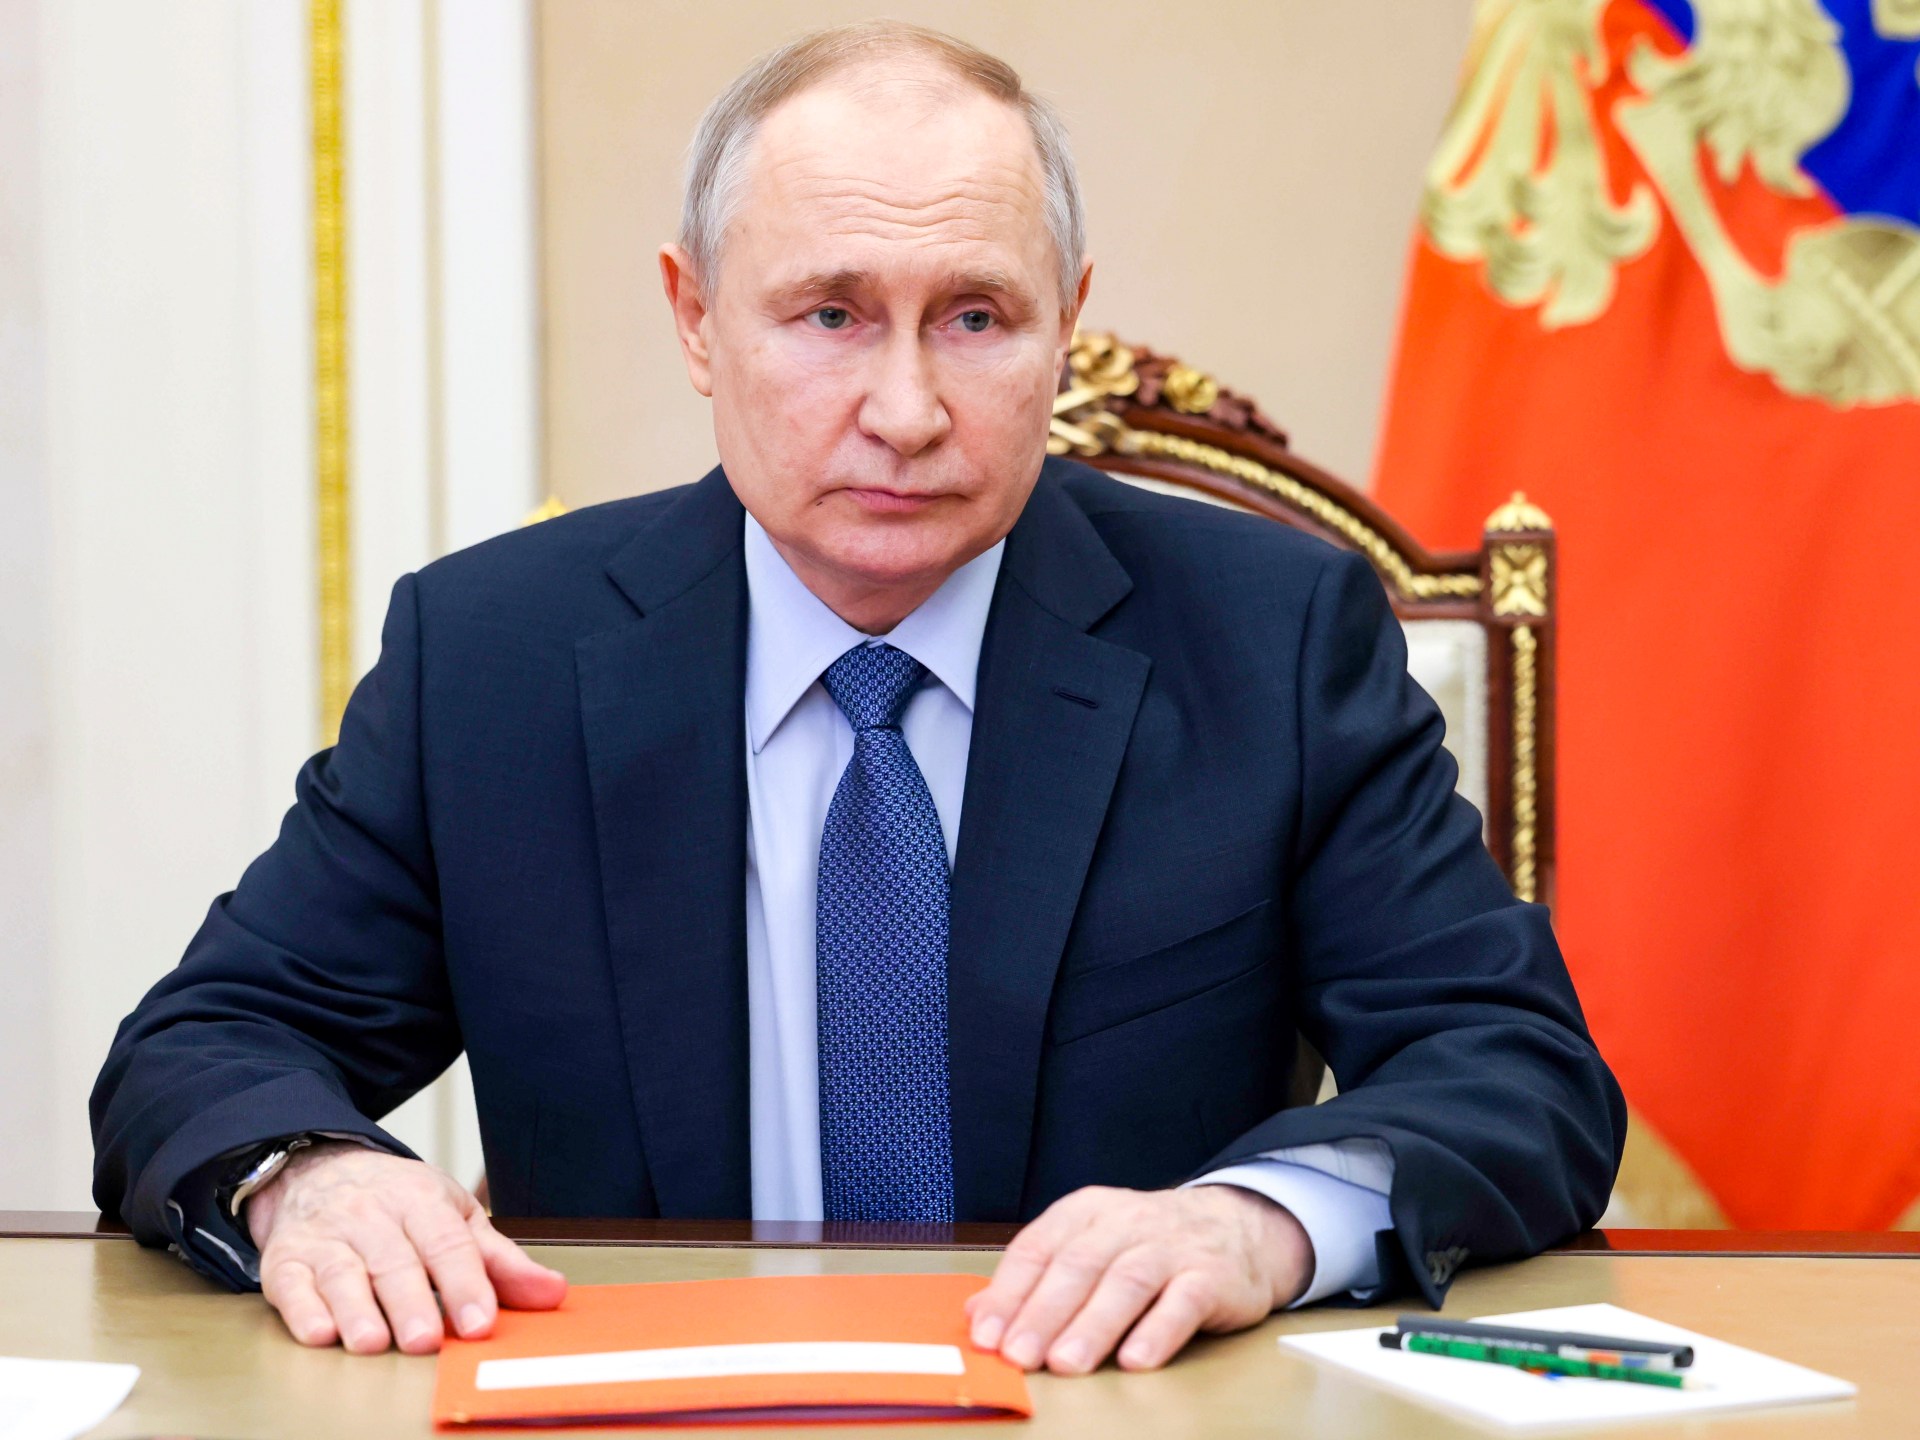 Putin navštívil Krym po tom, čo bol na neho vydaný zatykač pre vojnové zločiny |  Správy o vojne medzi Ruskom a Ukrajinou